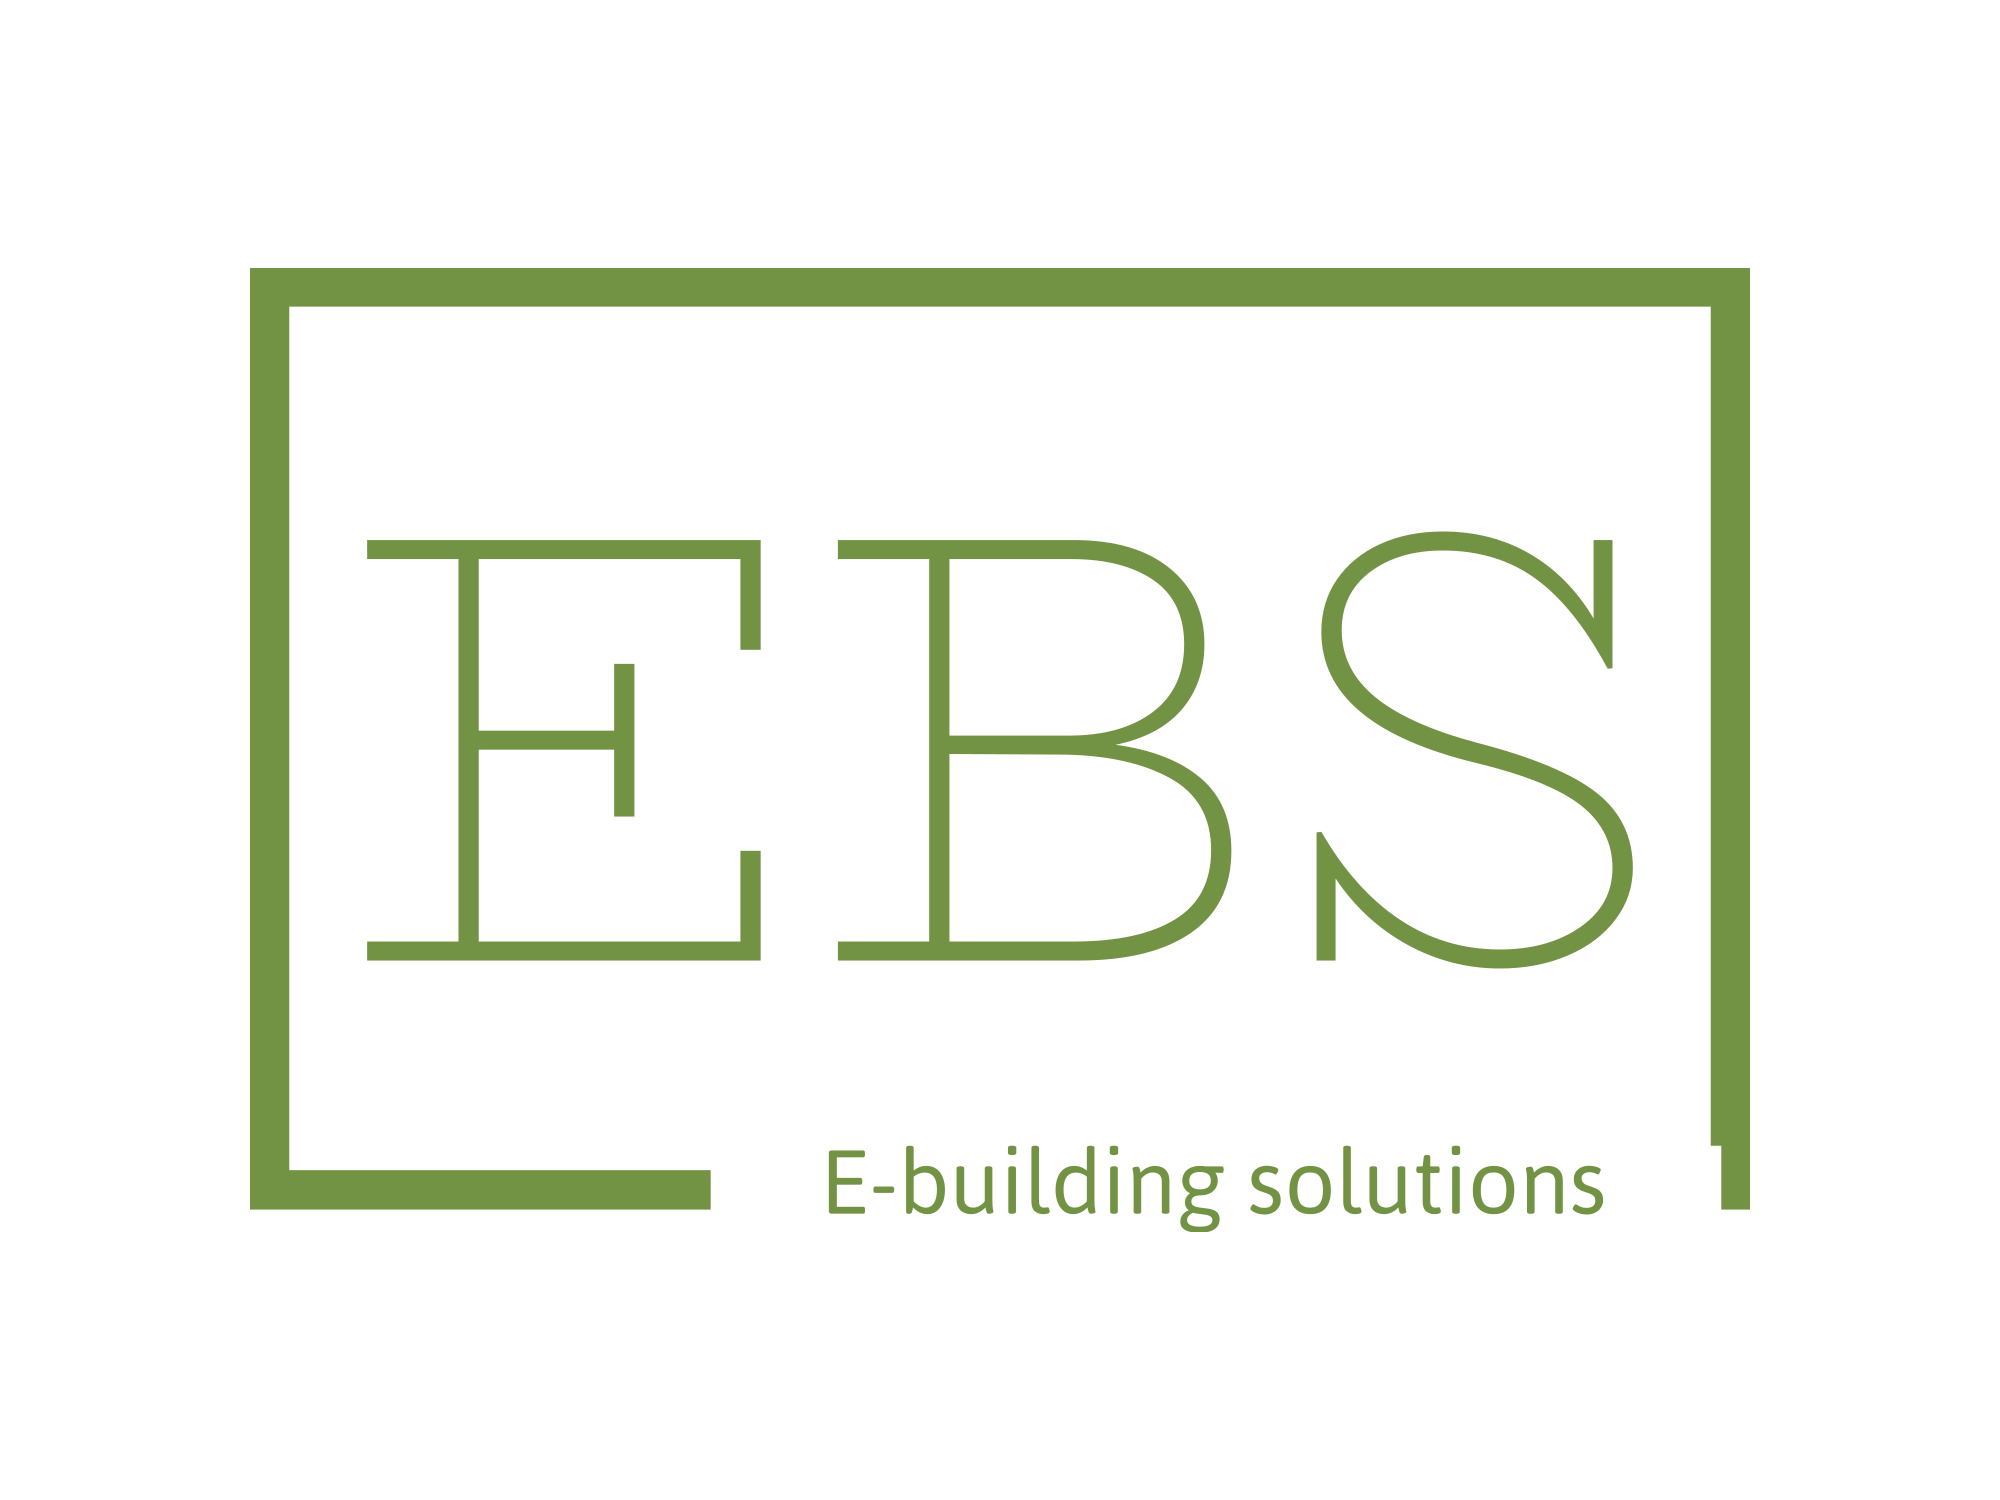 ebs-high-resolution-color-logo.png